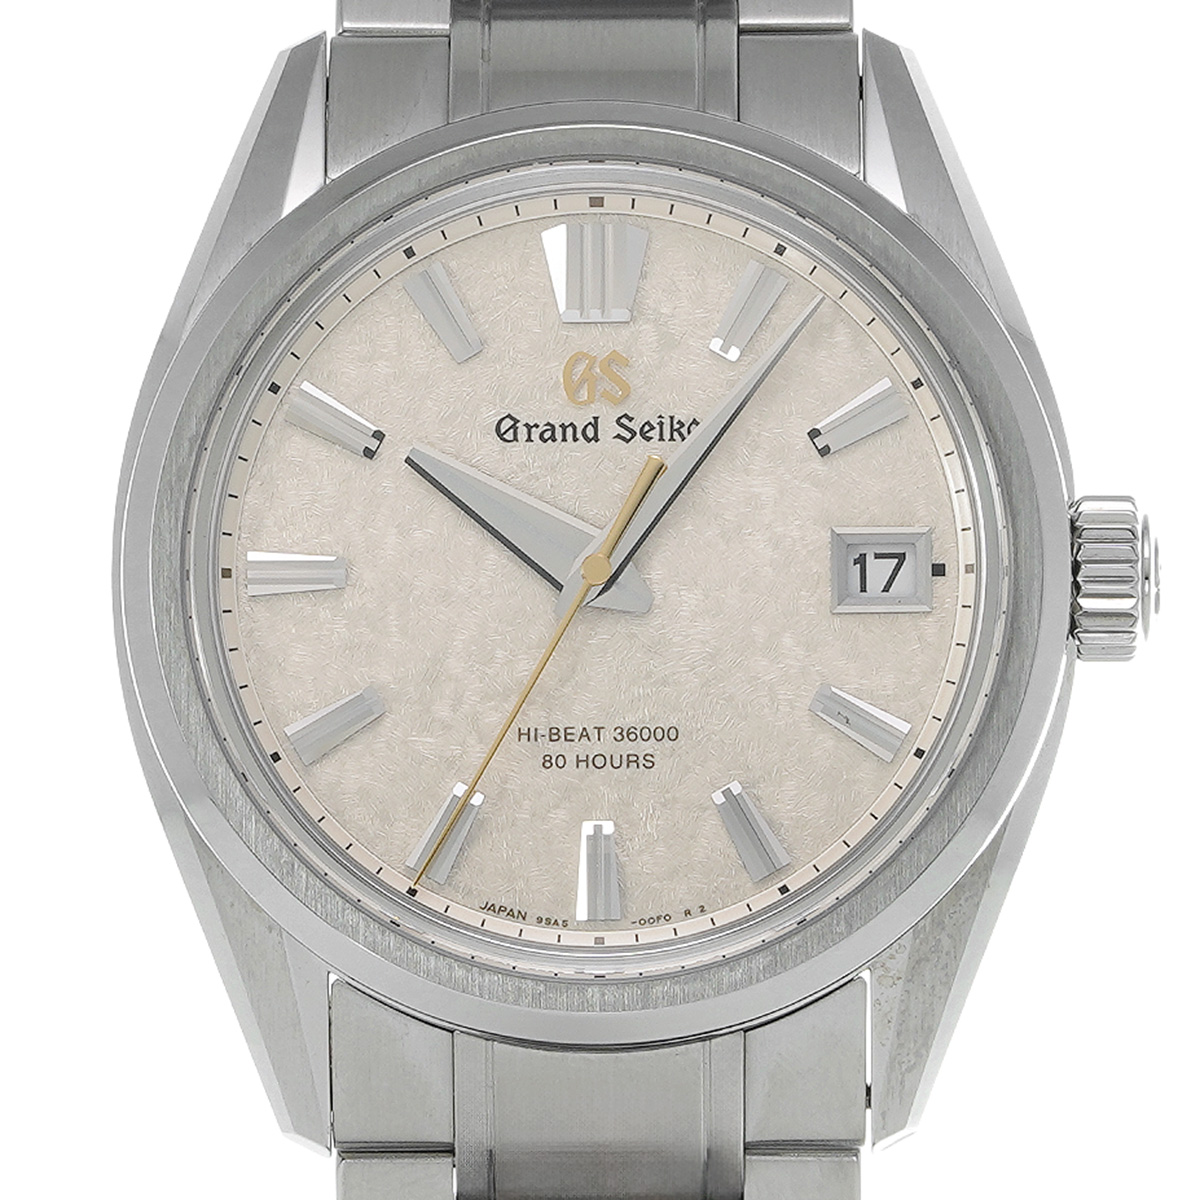 グランドセイコー Grand Seiko SLGH015 シャンパンゴールド メンズ 腕時計